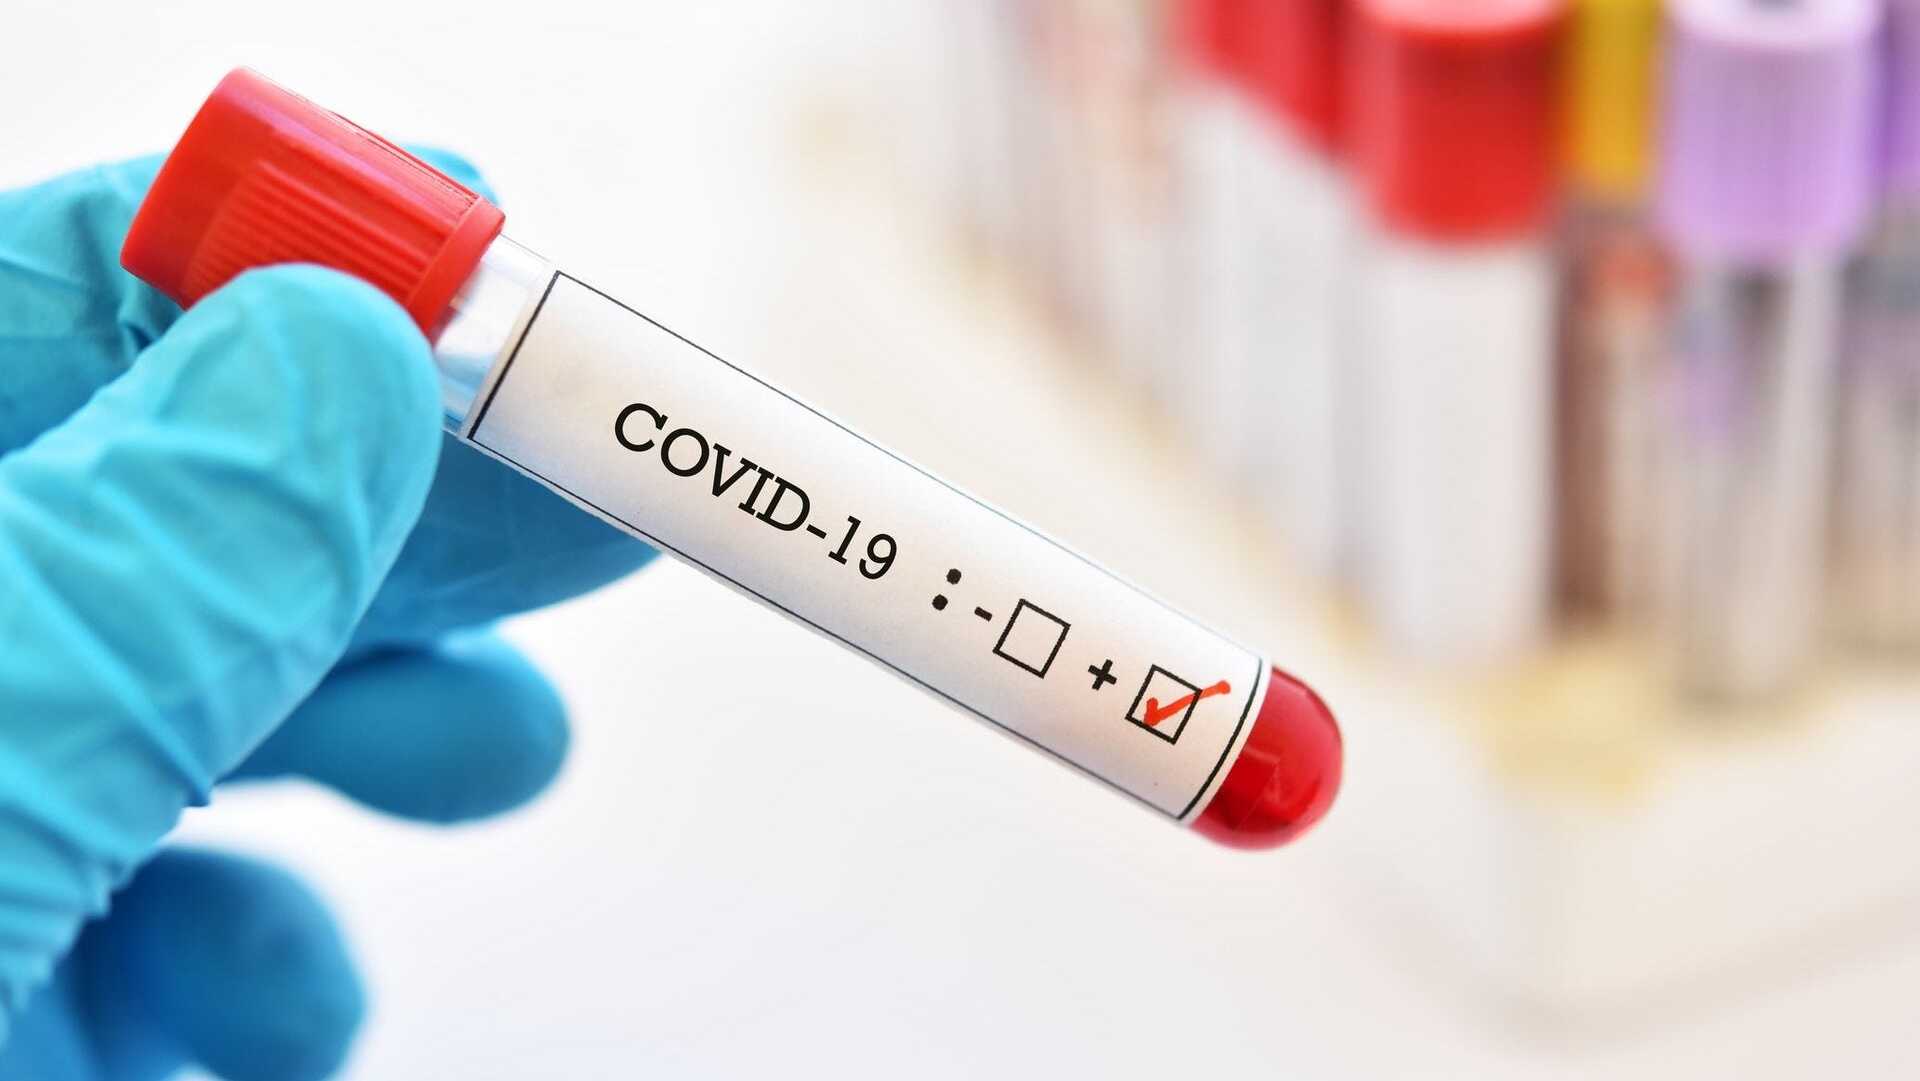 בדיקה בדיקת קורונה קוביד-19 וירוס 